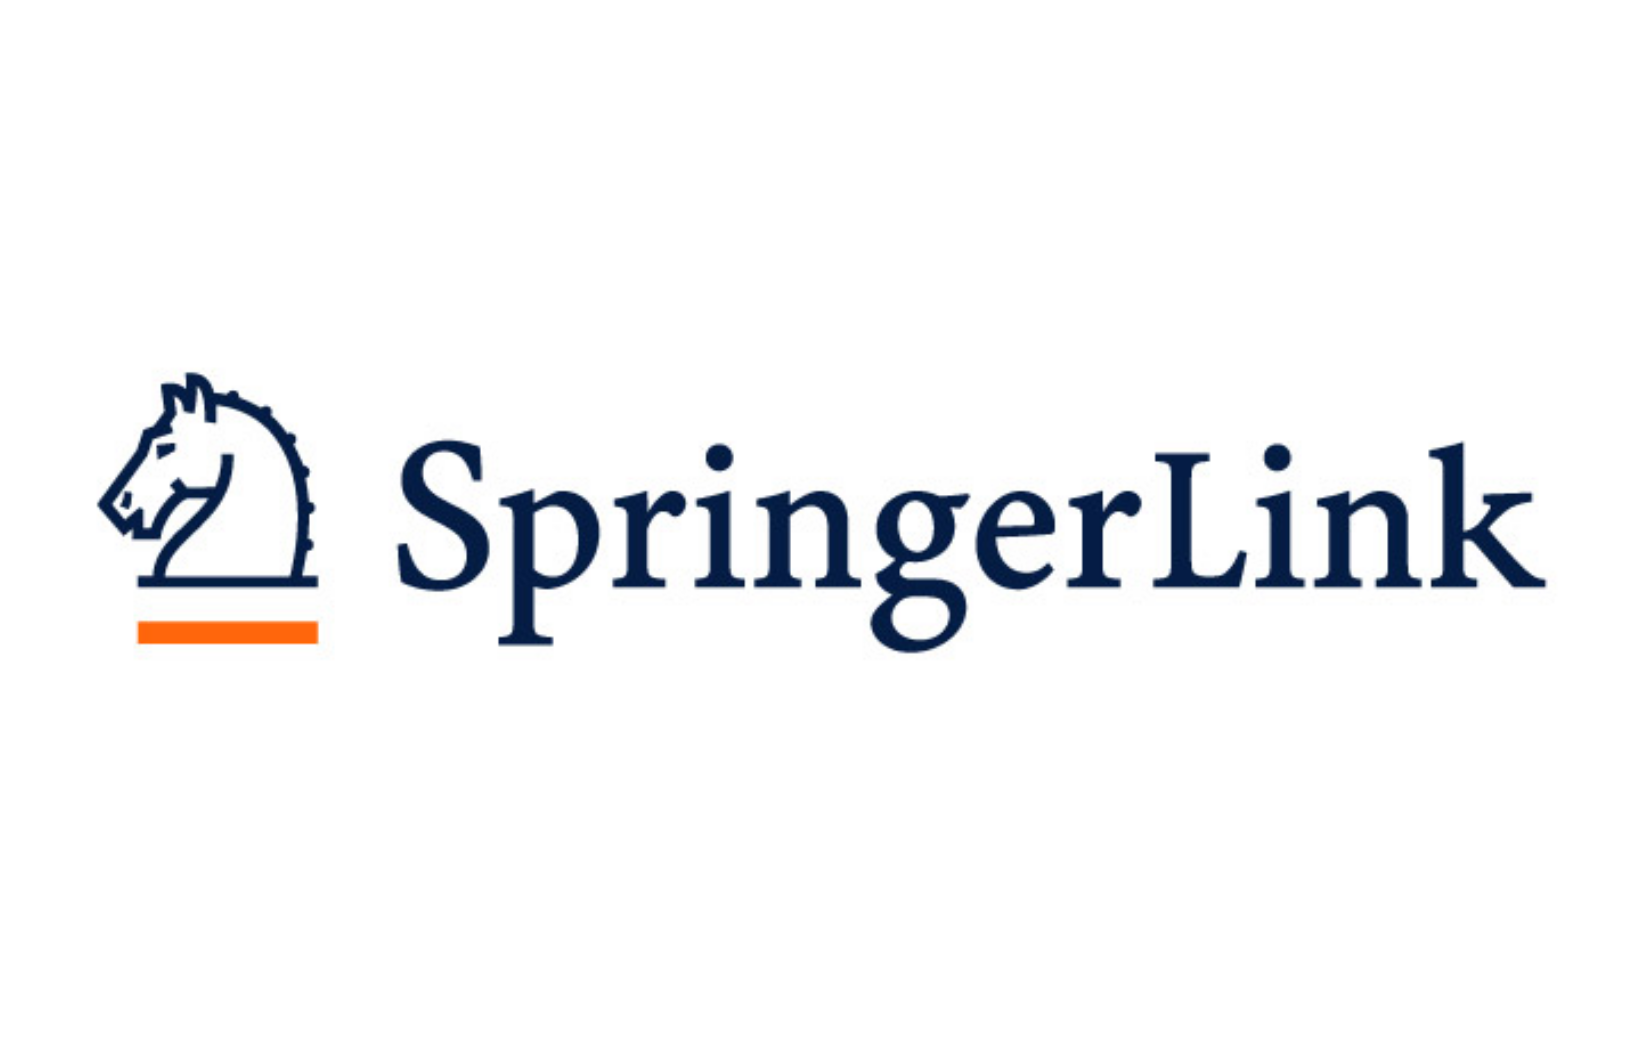 Springer link